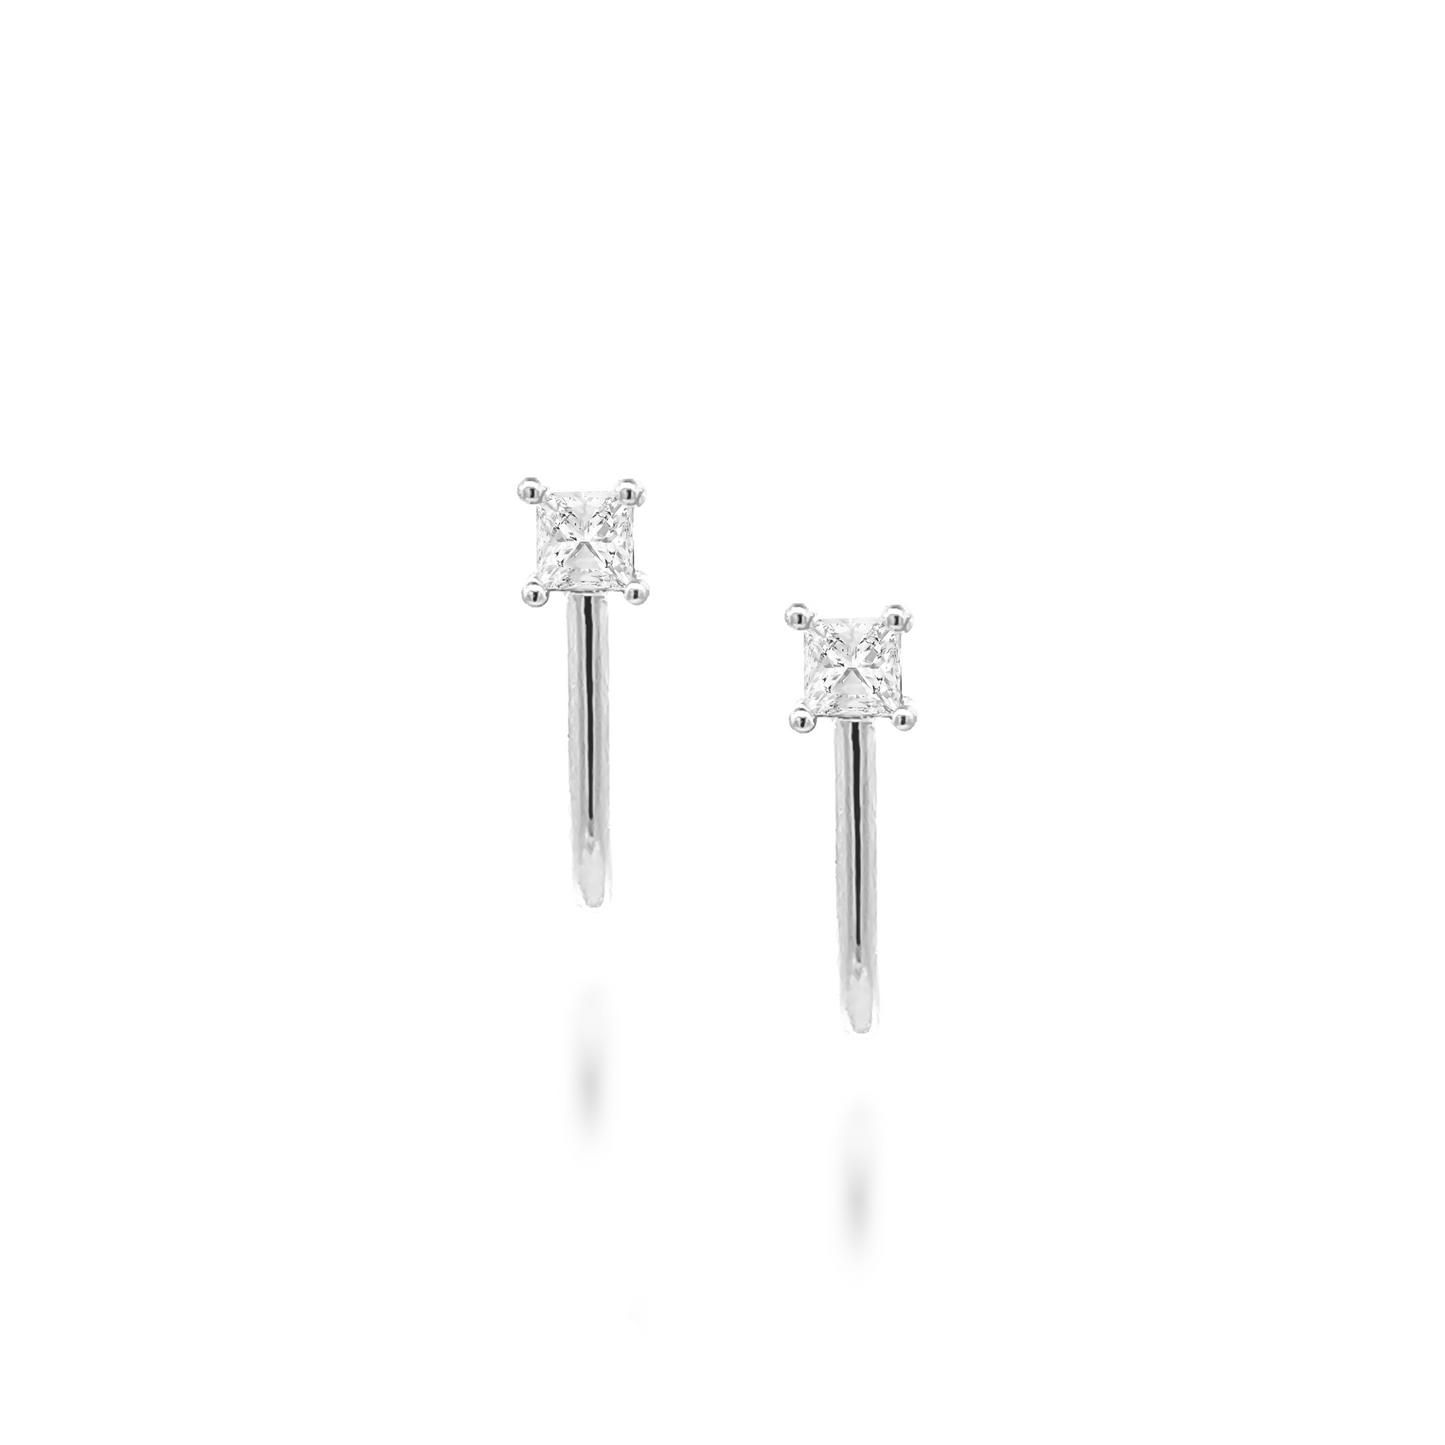 Soli Diamante Cane Earrings in Silver